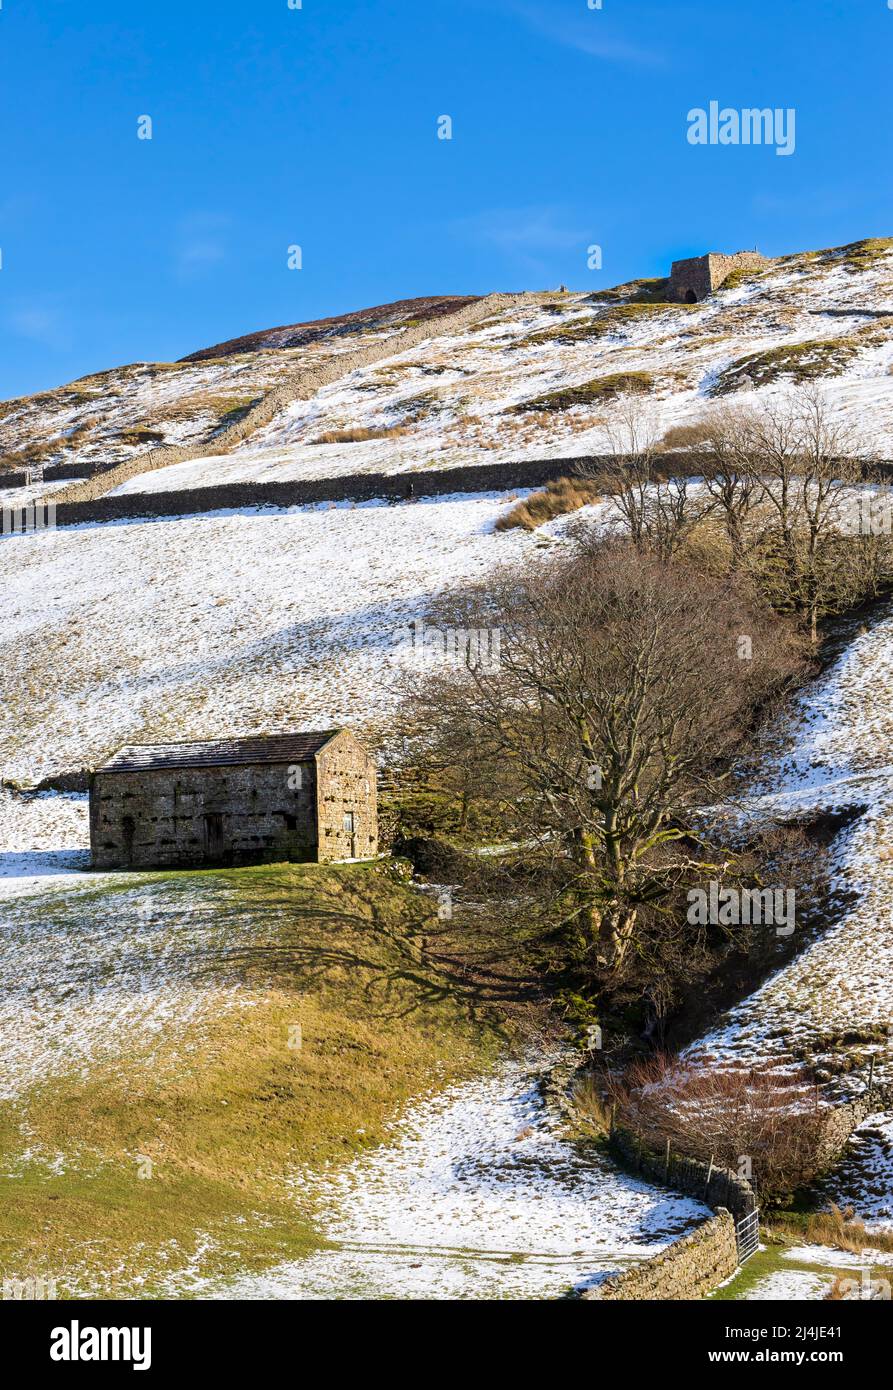 Fienile in pietra a Swaledale, Yorkshire Dales National Park. Le iconiche pareti in pietra asciutta racchiudono pascoli ricoperti di neve a fine inverno. Un forno abbandonato di calce c Foto Stock